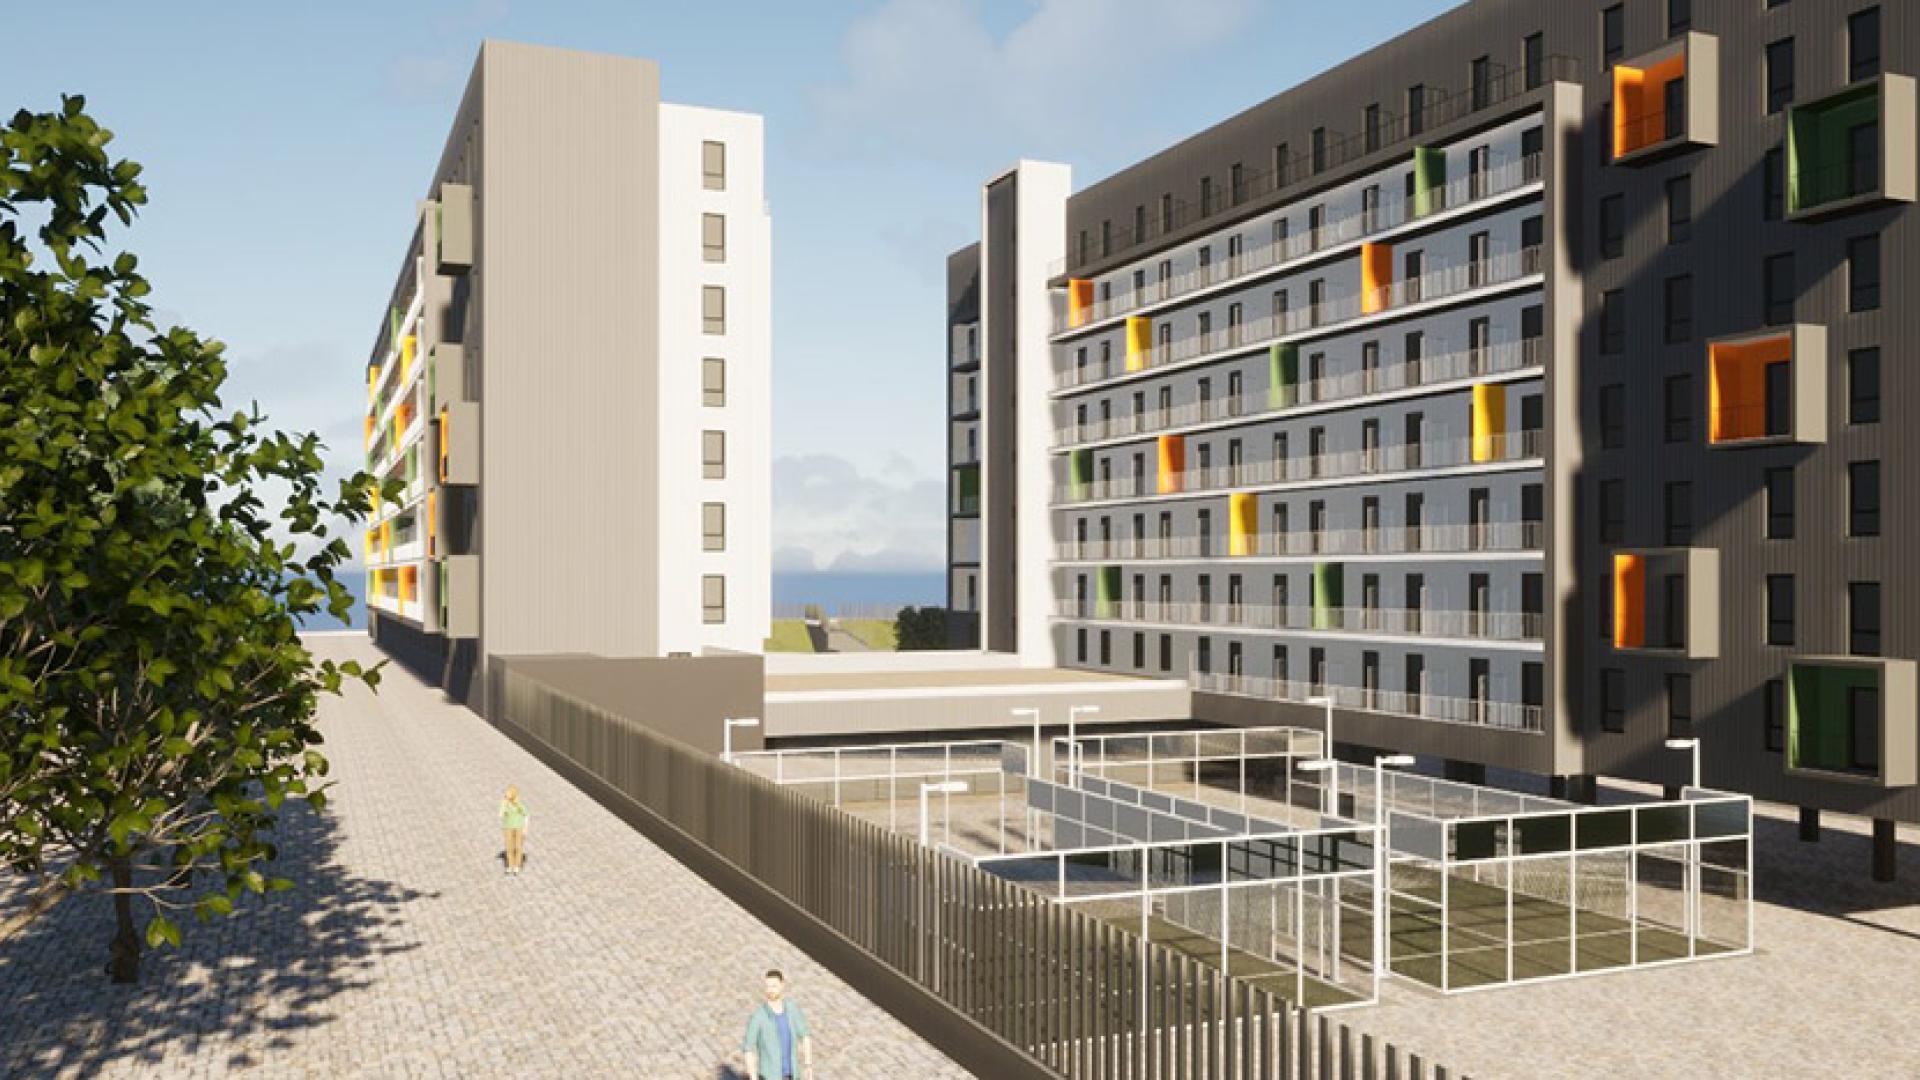 la mayor residencia de estudiantes de zaragoza abrirá en 2026: así será